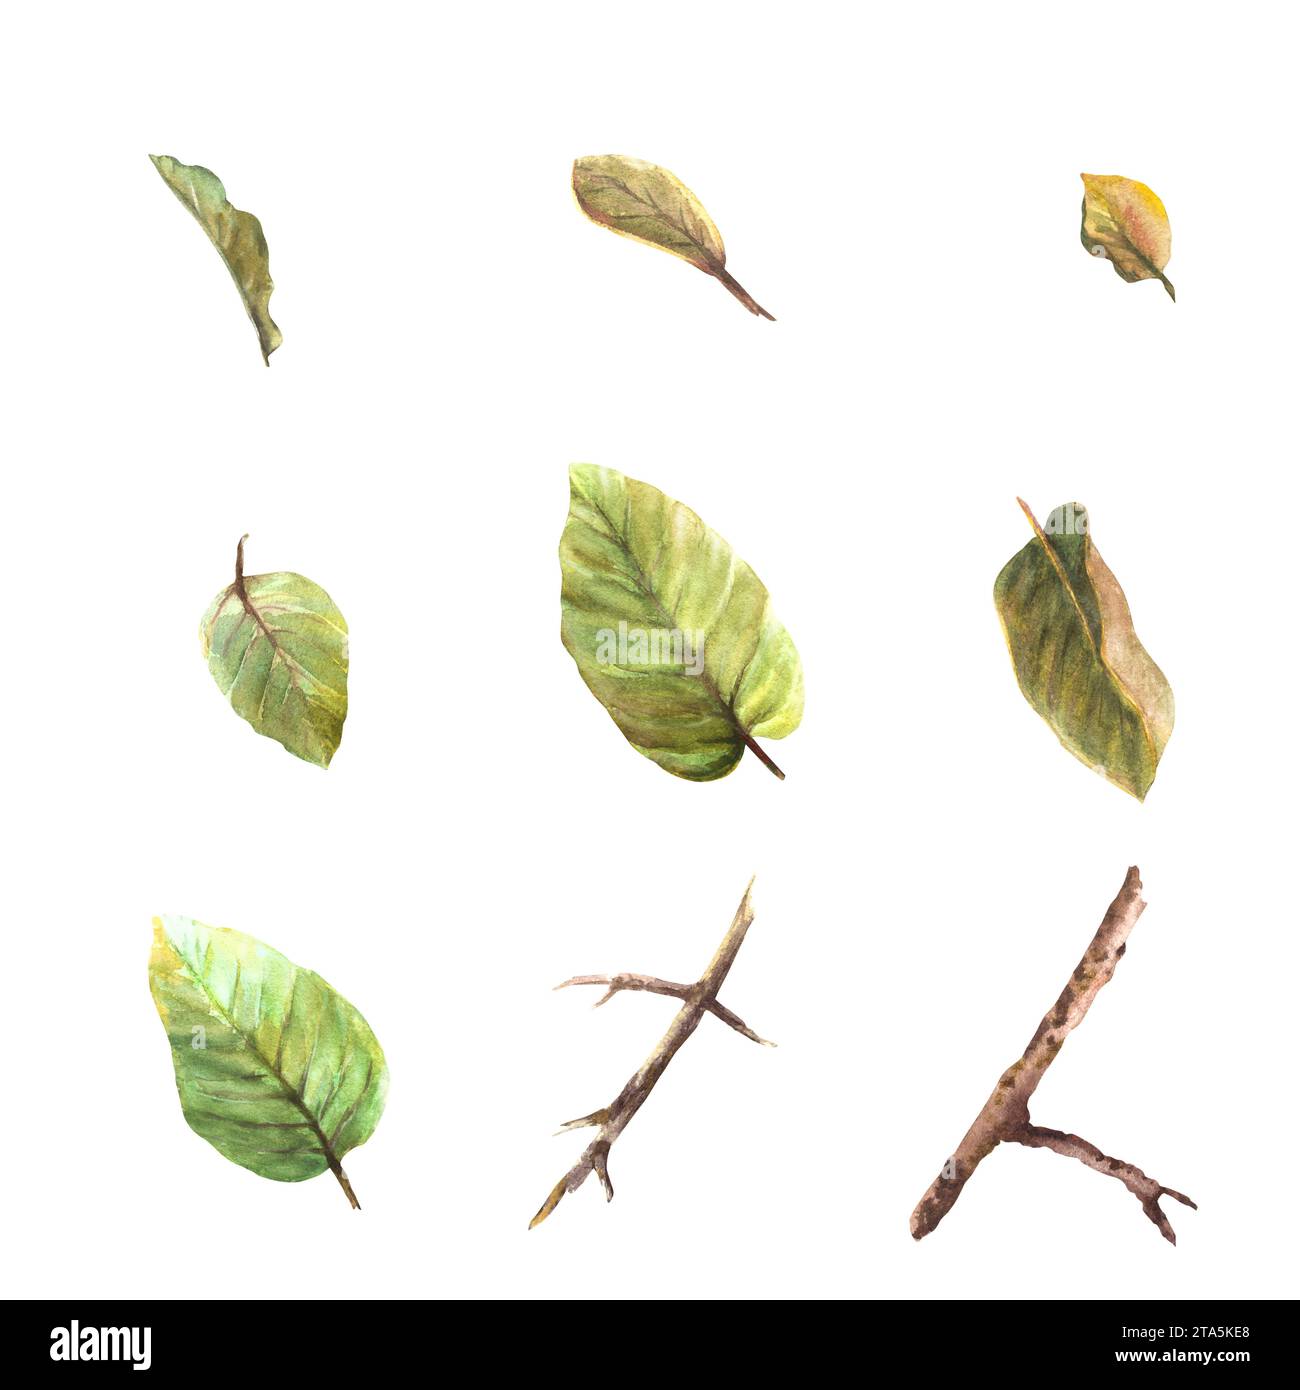 Aquarell handgezeichneter Satz von Blättern und Zweigen von Quitten, Apfel- oder Birnenbäumen, verschiedene Größen und Schattierungen. Pflanzen Sie Clipart-Illustration für Ihren Stockfoto